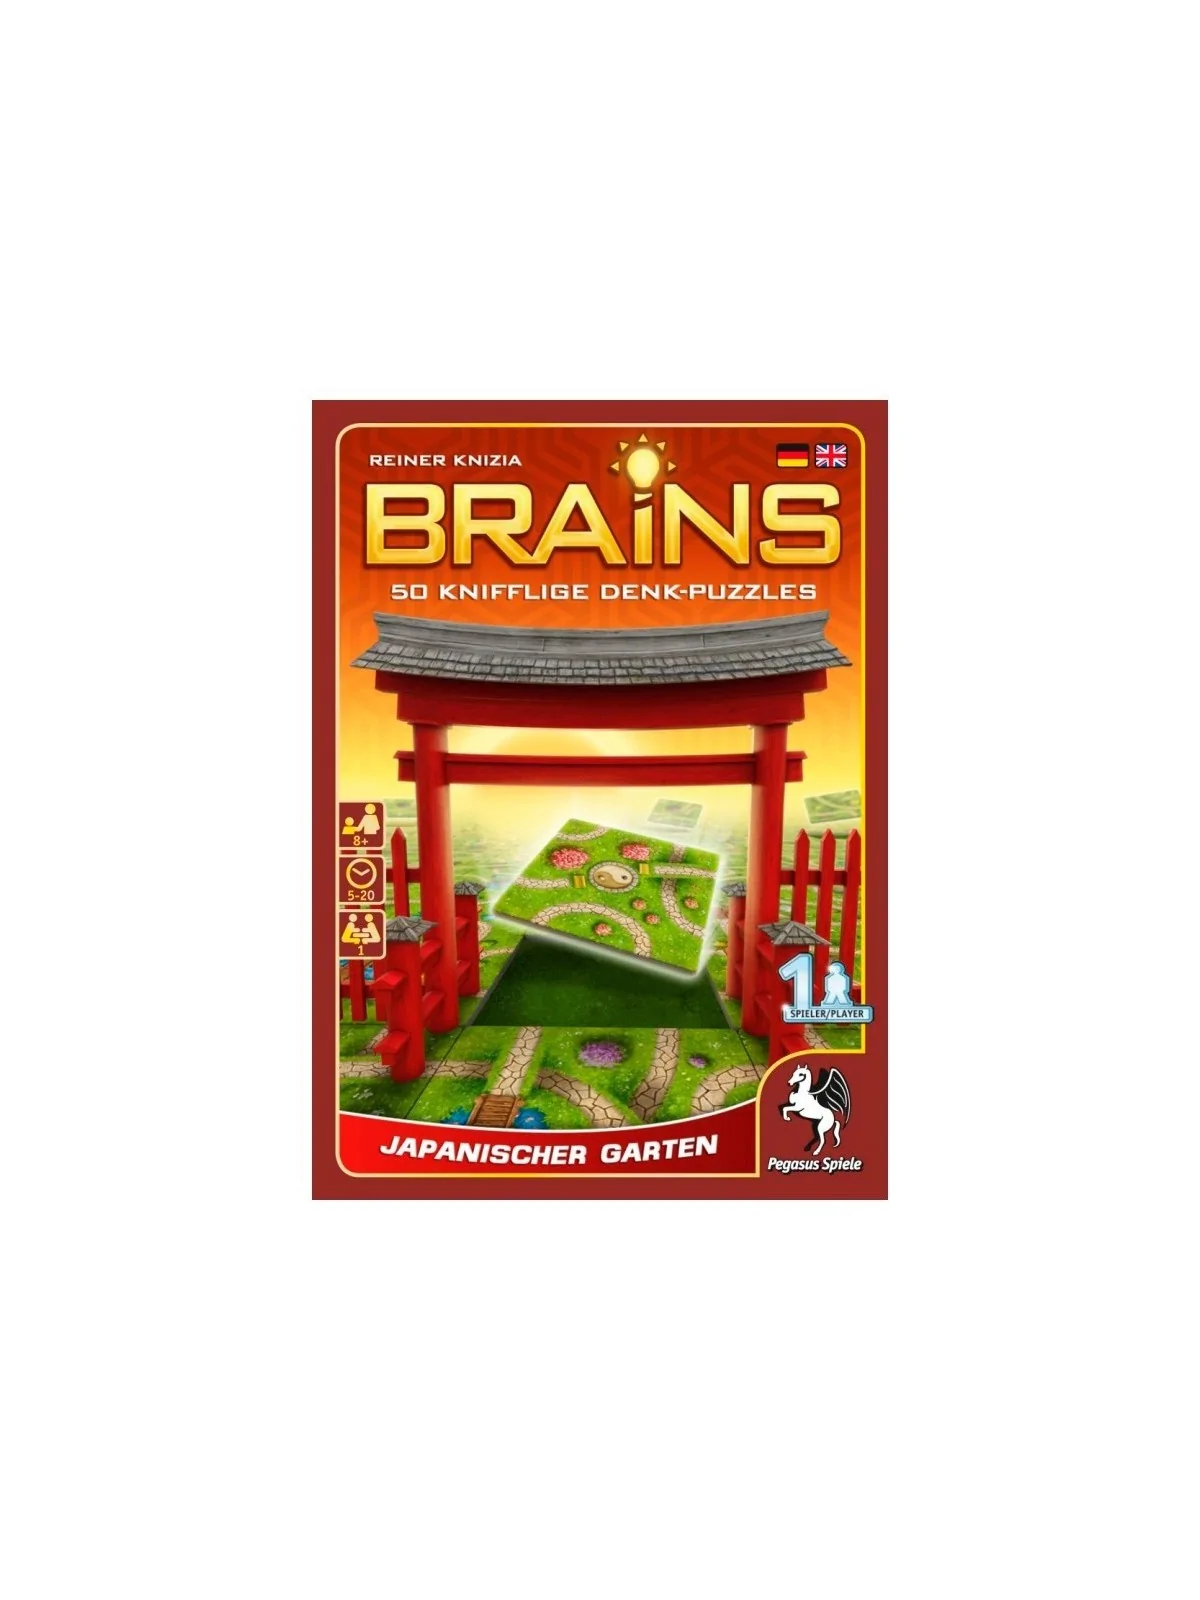 Comprar Brains - Japanischer Garten (Inglés) barato al mejor precio 8,